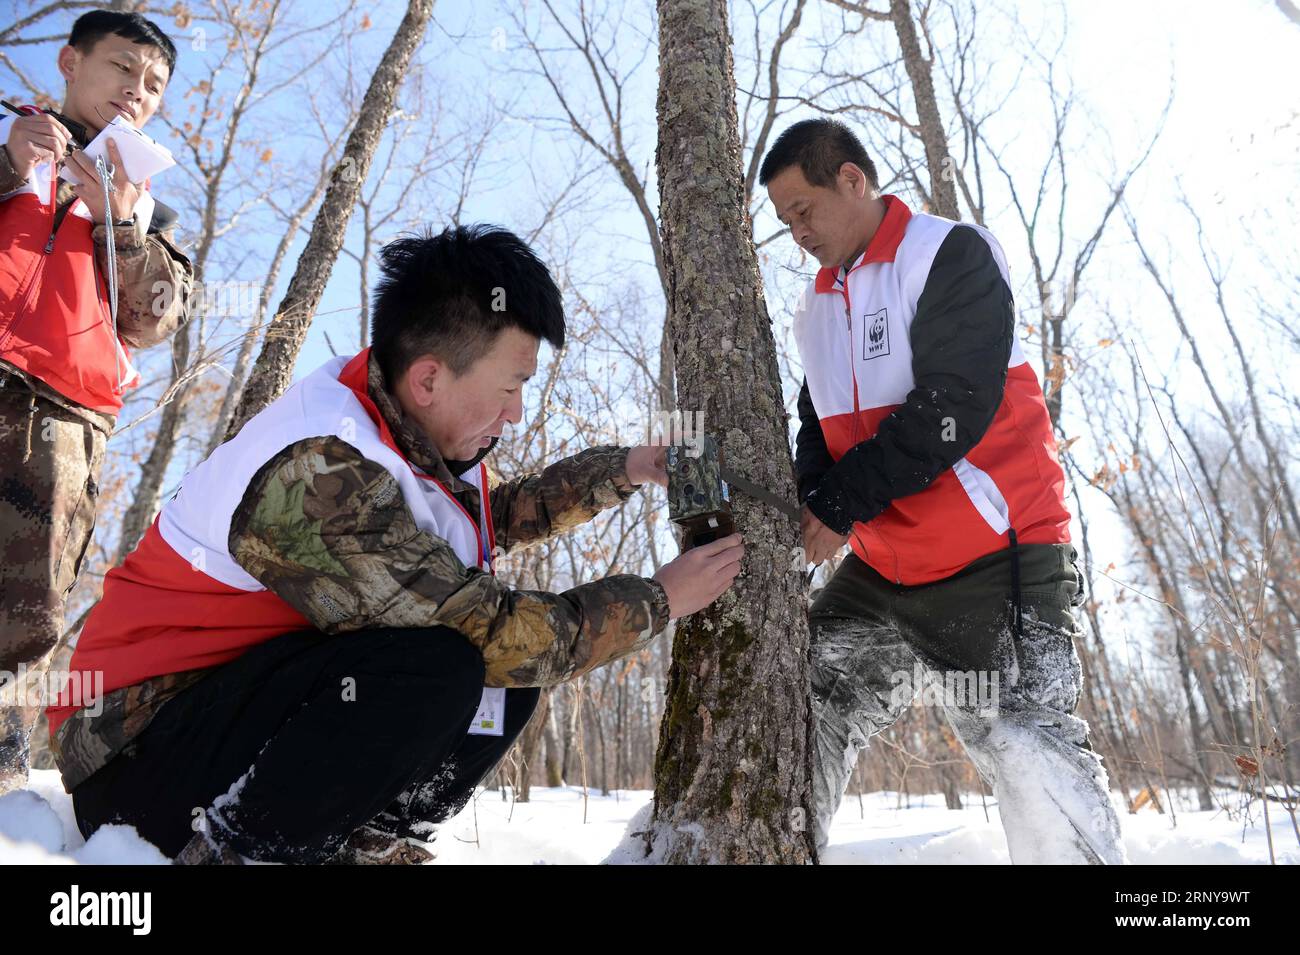 (180306) -- SUIFENHE, 6. März 2018 -- Tiger Conservation Experts richtete eine Infrarotkamera während eines sibirischen Tiger Conservation Skills Contest in Suifenhe, nordöstliche chinesische Provinz Heilongjiang, 5. März 2018 ein. Zwanzig Tiger-Schutzteams aus China und Russland hatten an diesem Wettbewerb teilgenommen, unter anderem bei der Strafverfolgung von Wildtieren, der Fallenräumung, dem Einrichten und Debuggen von Infrarotkameras sowie der Aufzeichnung der Lebensraumumgebung. ) (lmm) CHINA-HEILONGJIANG-WILDTIER-SIBIRISCHE TIGER-ERHALTUNG (CN) WangxKai PUBLICATIONxNOTxINxCHN Stockfoto